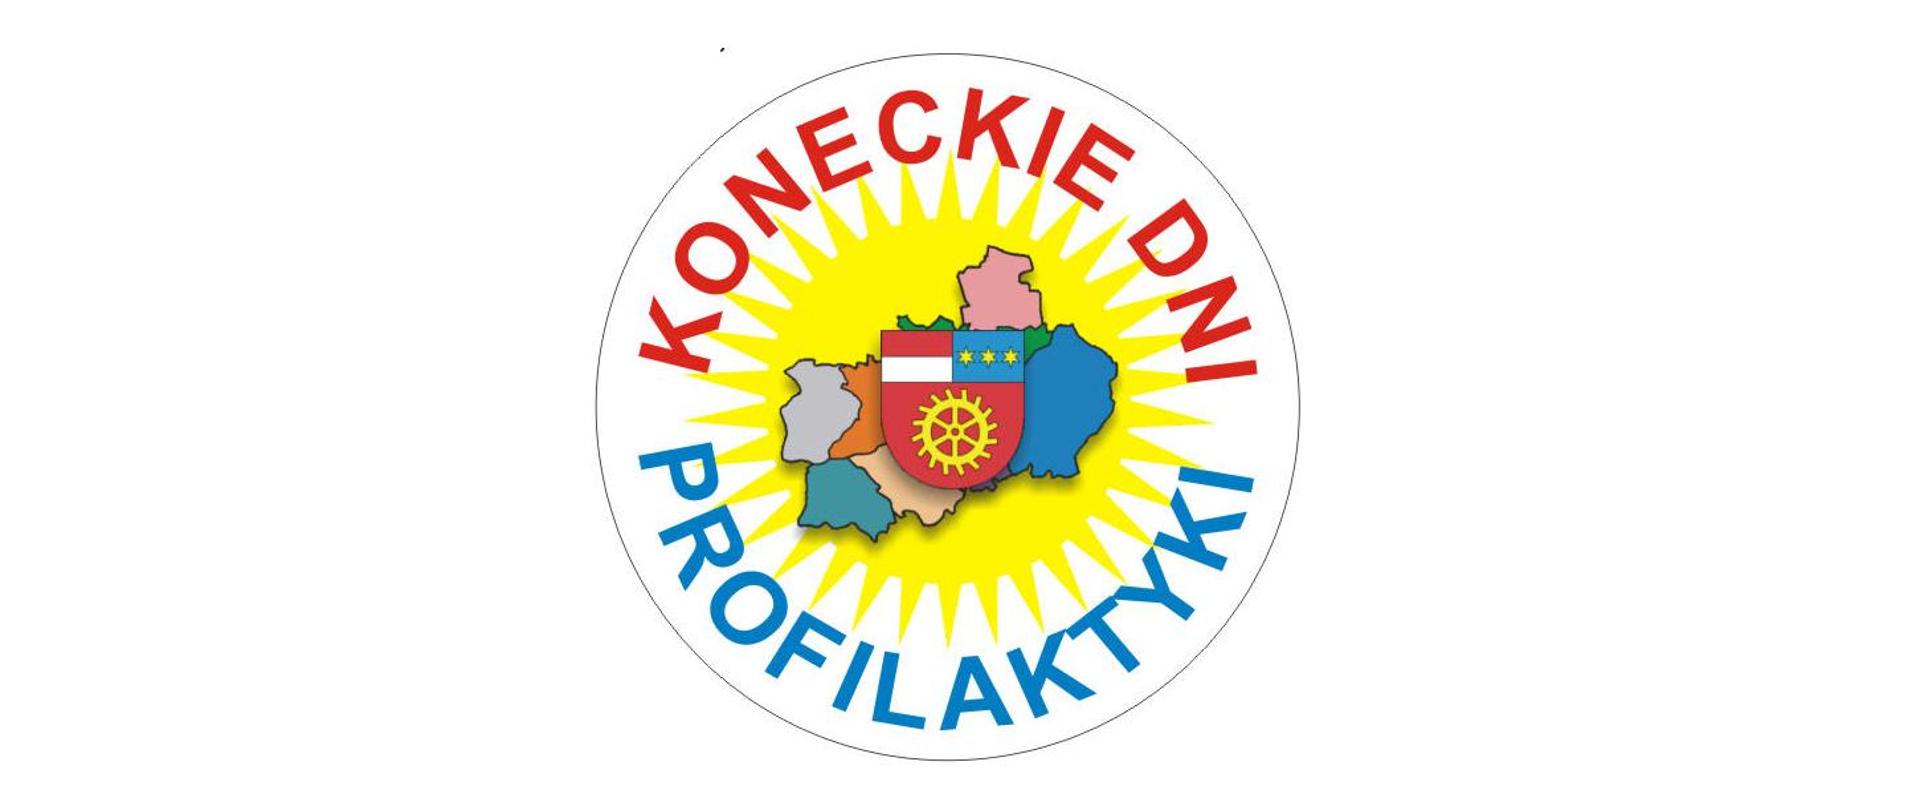 Logo - w ksztacie koła, w którym na obwodzie jest napis Koneckie Dni Profilaktyki, a w centrum są kontury powiatu koneckiego z podziałem na gminy i herbem powiatu i to wszystko na tle słońca.